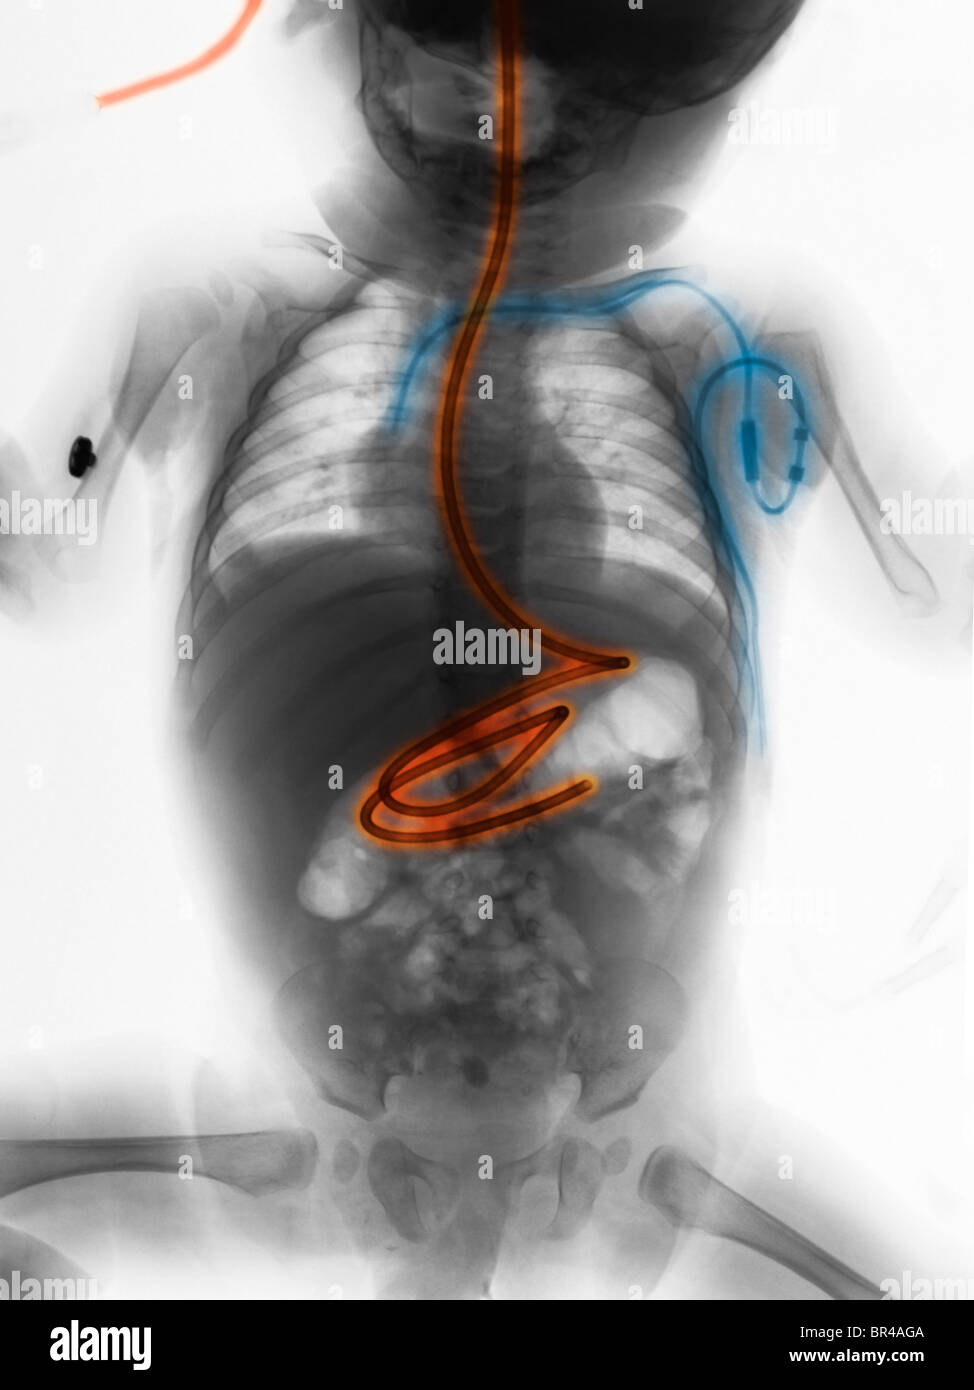 Corps radiographie d'un garçon âgé de 5 mois avec un tube d'alimentation et d'une ligne centrale Banque D'Images